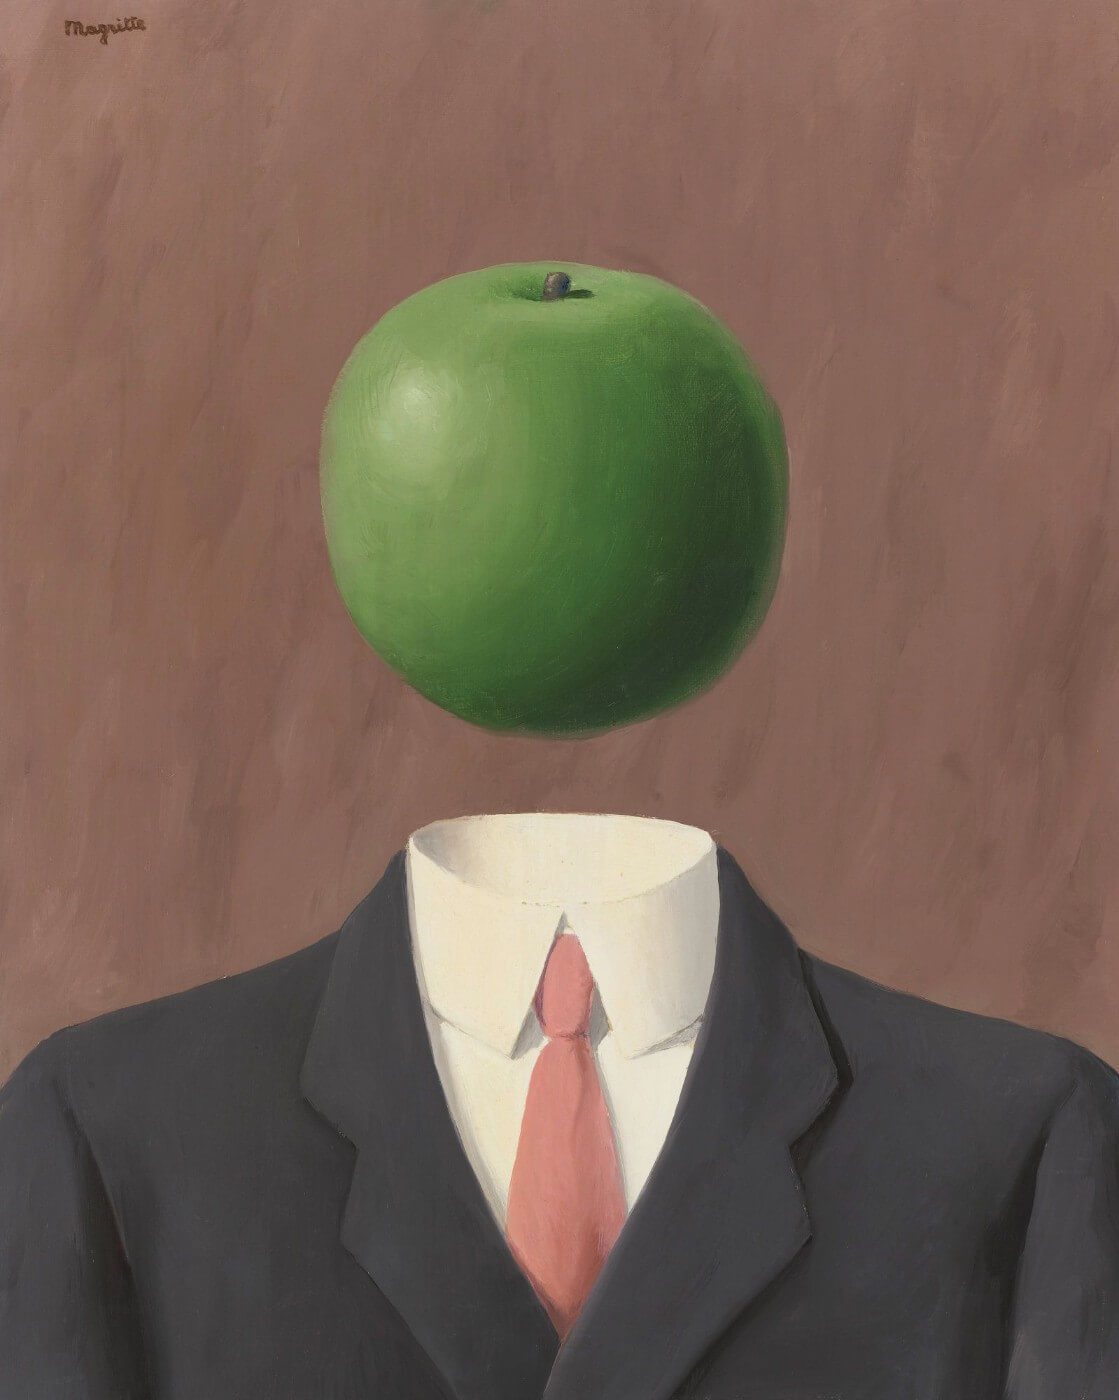 Rene_Magritte_-_L_idee_e--fa-bff-abbfe